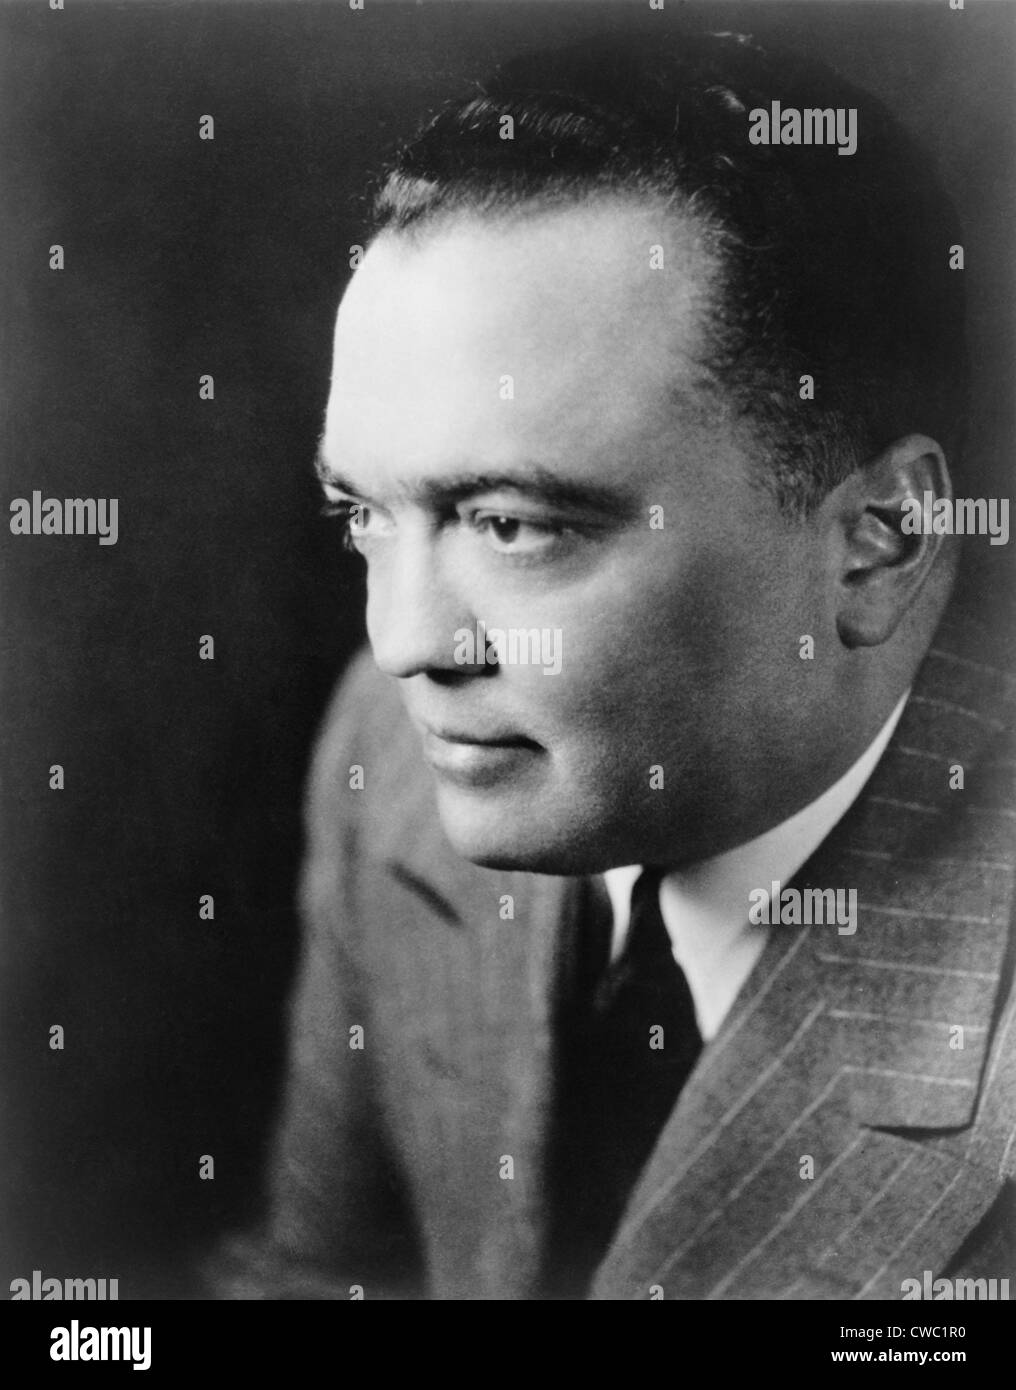 J. Edgar Hoover le directeur du Federal Bureau of Investigation en 1948 publicité photographie. Banque D'Images